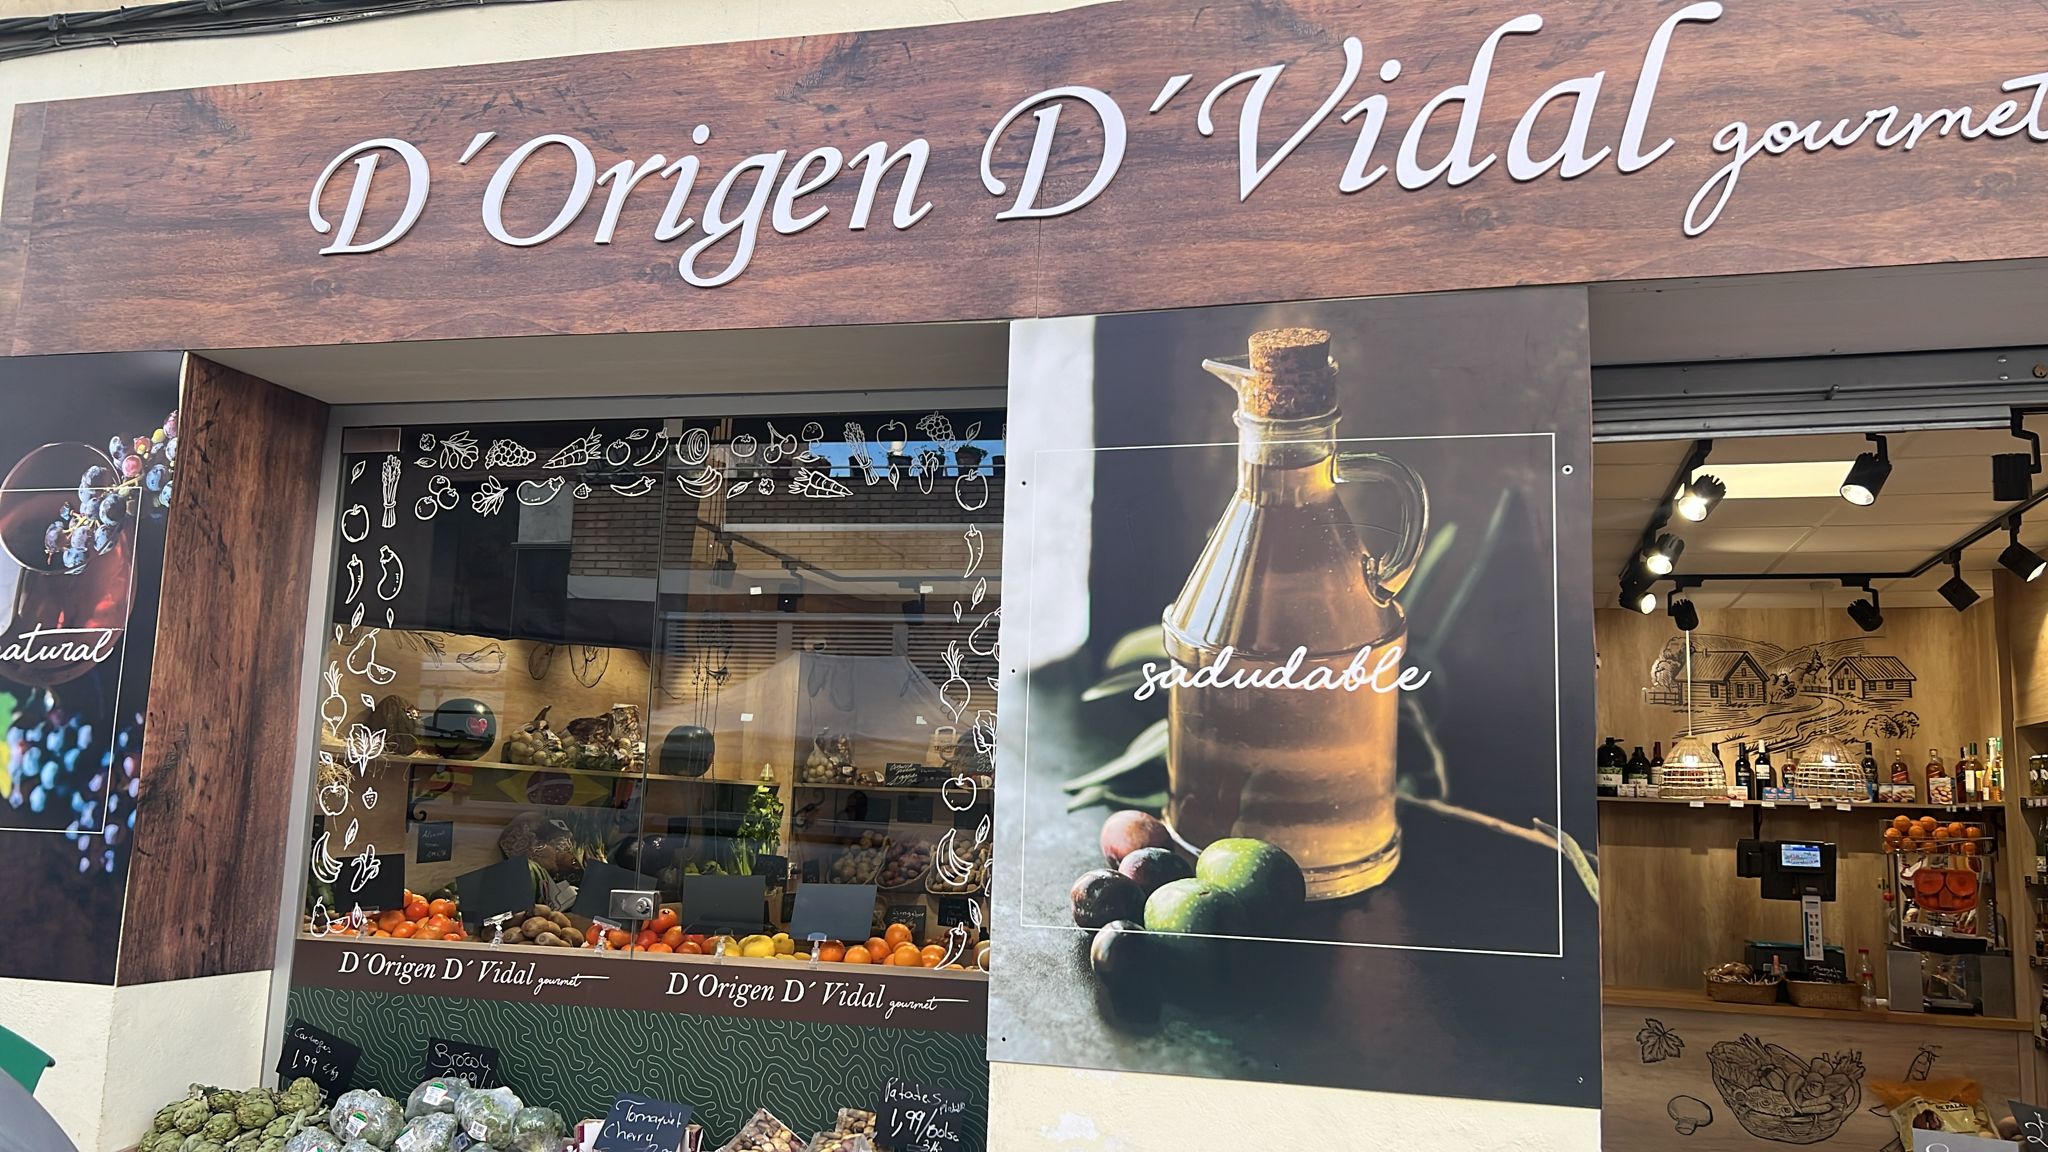 Images D ´ Origen D ' Vidal Gourmet